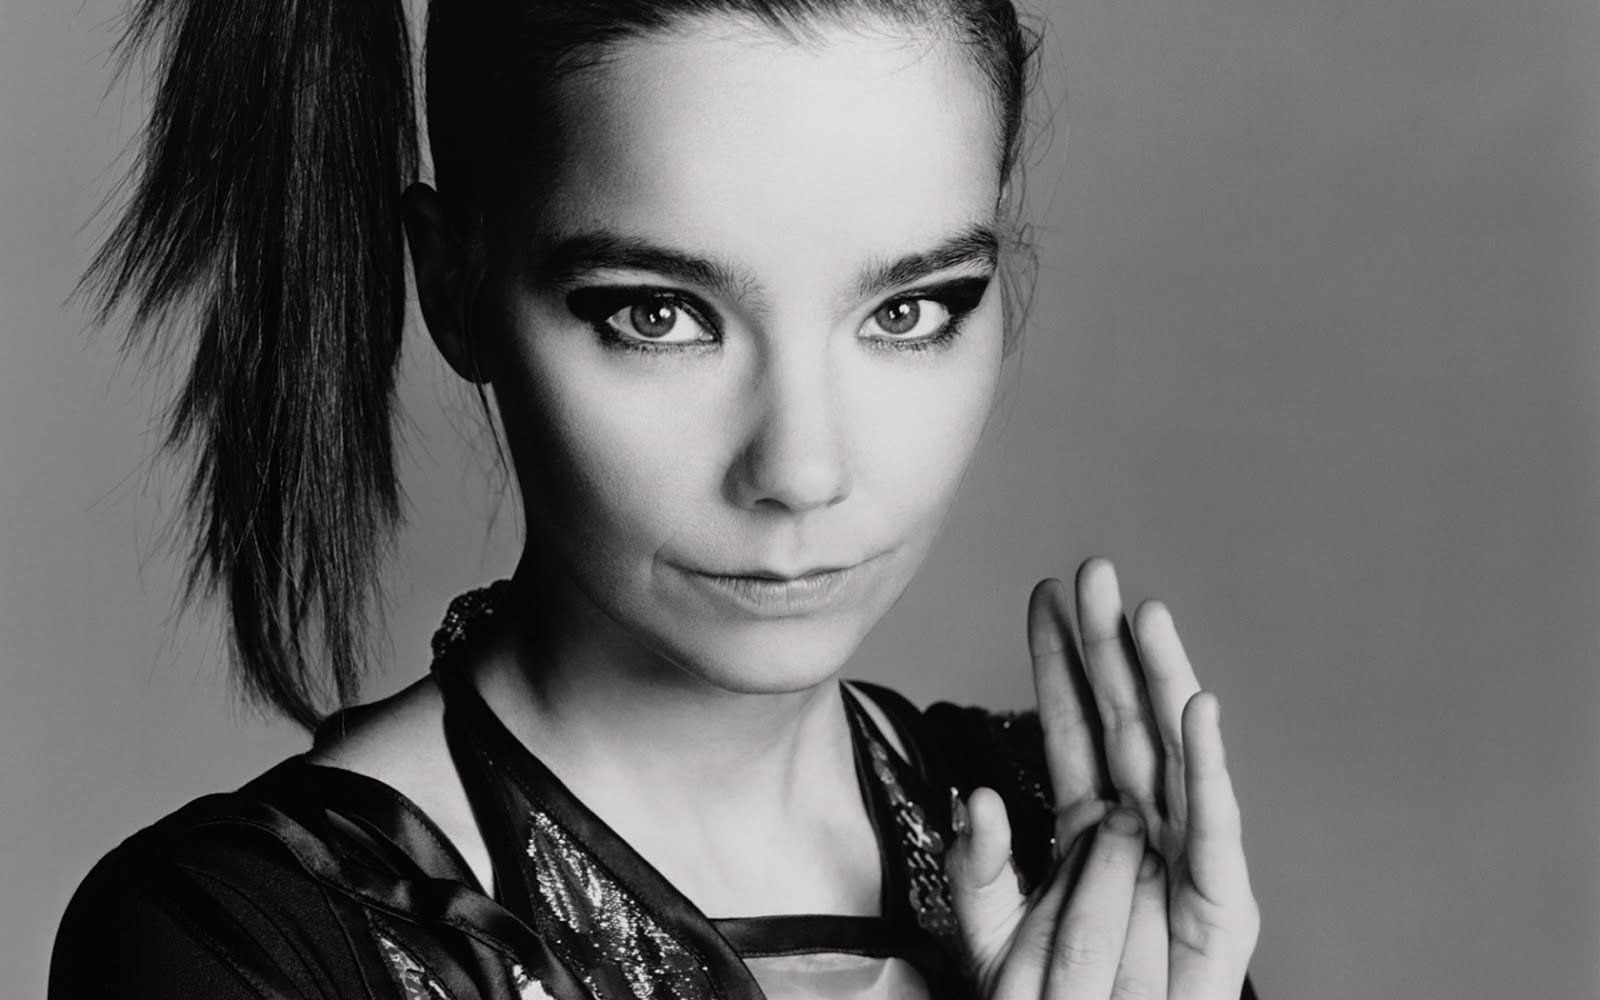 冰岛创作歌手Björk(比约克)1993-2022发行专辑、单曲、现场辑合集[无损FLAC/11.9GB]百度云盘打包下载 影音资源 第2张